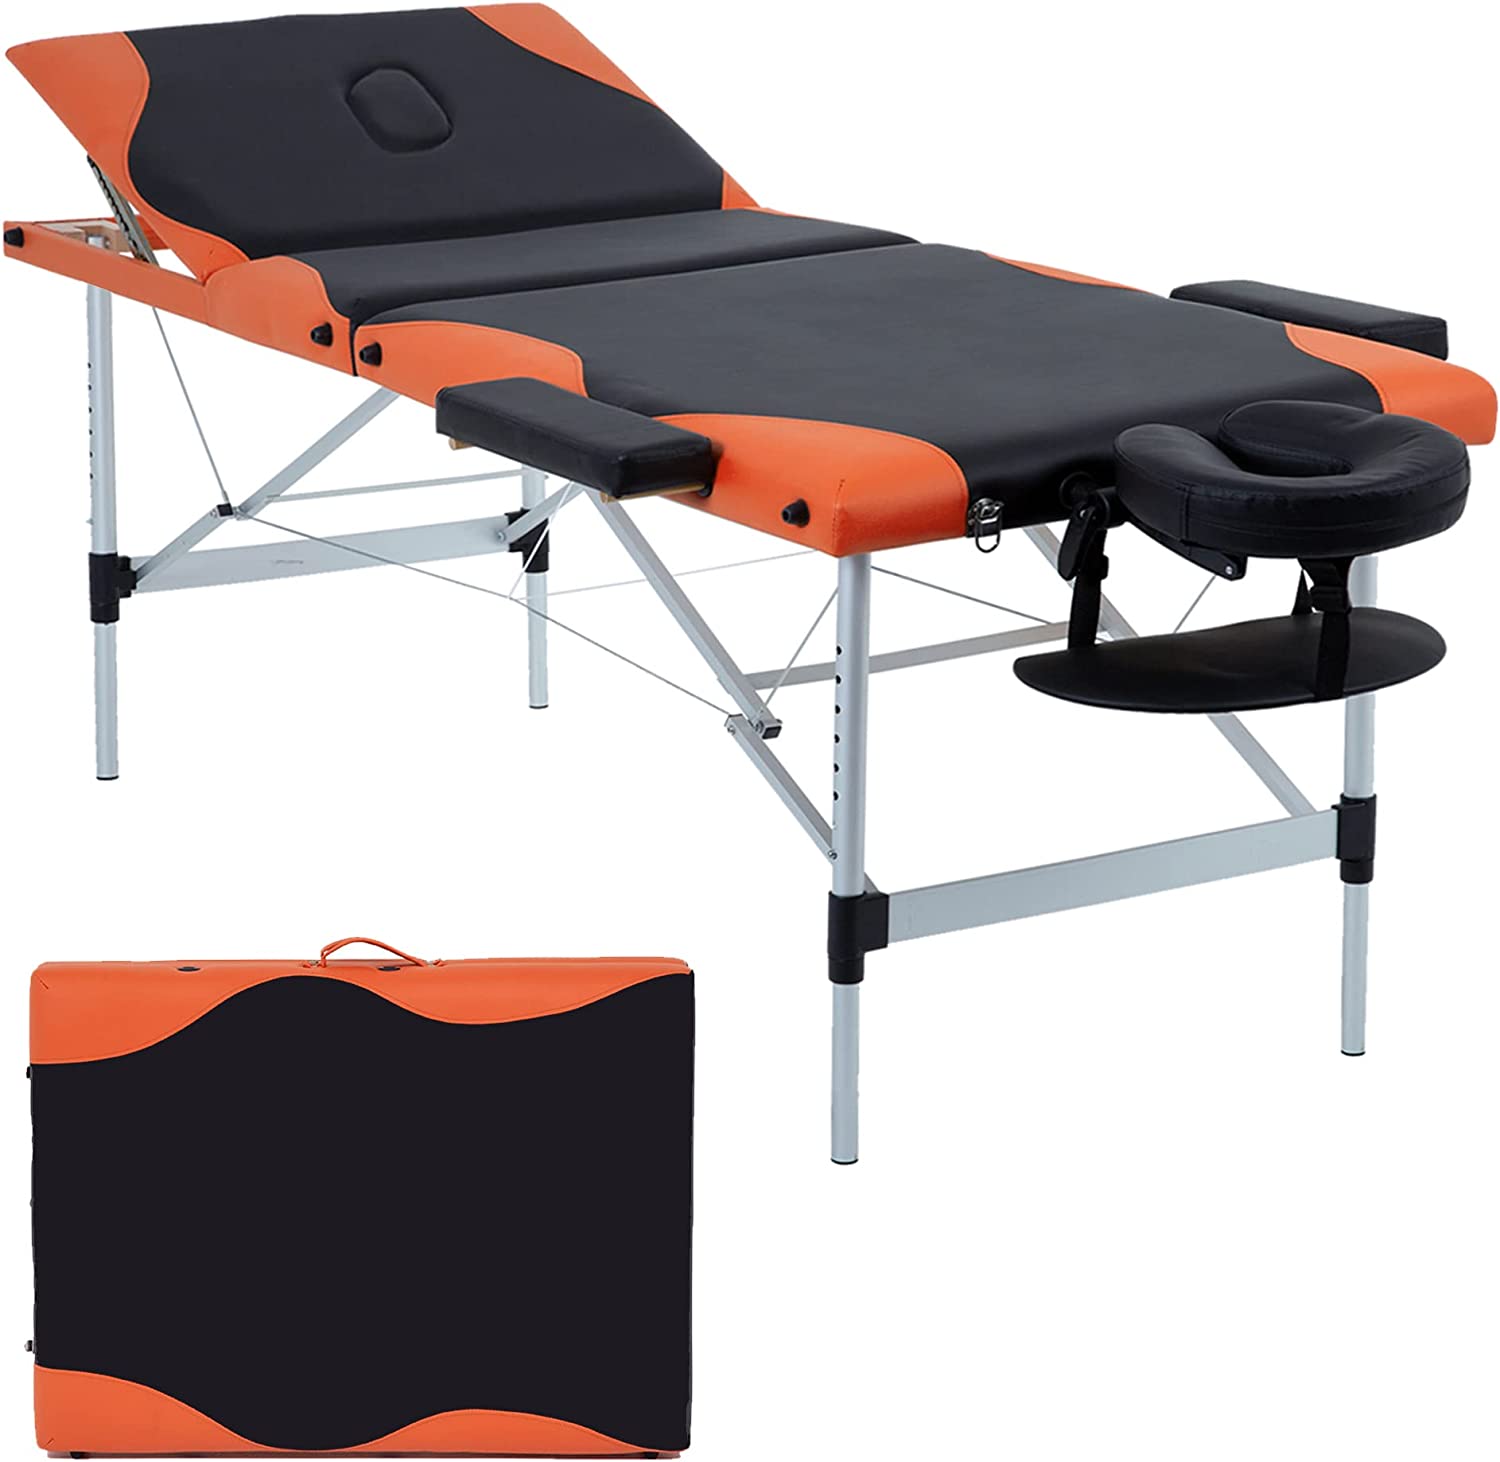  3. Height Adjustable Massage Table 